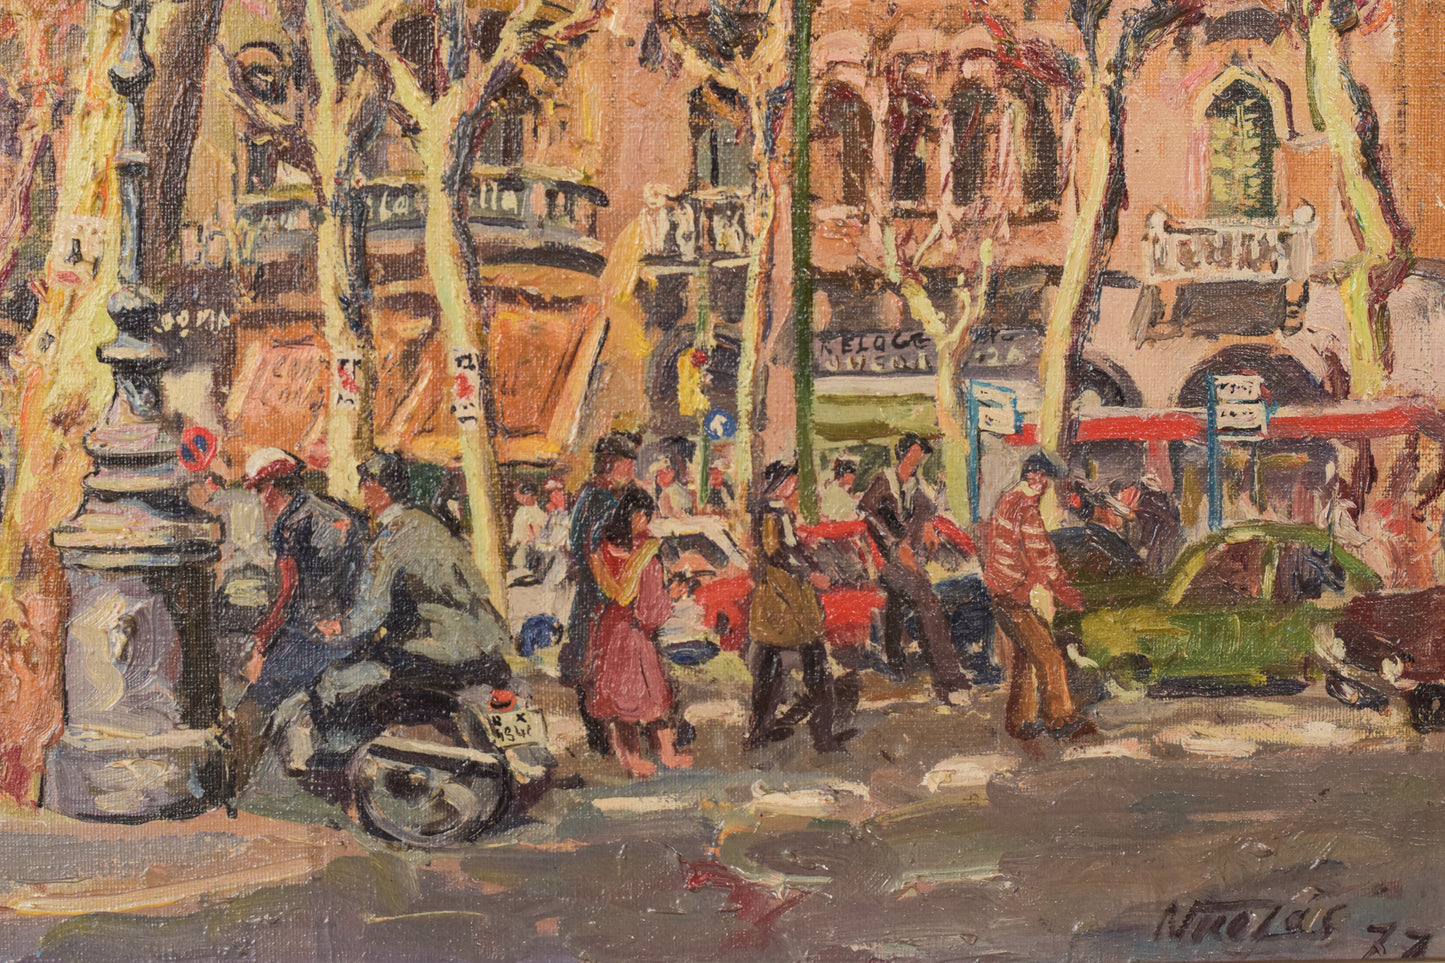 Barcelona Street Scene, 'Passeig de Gràcia. Plaça de Catalunya' - Oil on Canvas